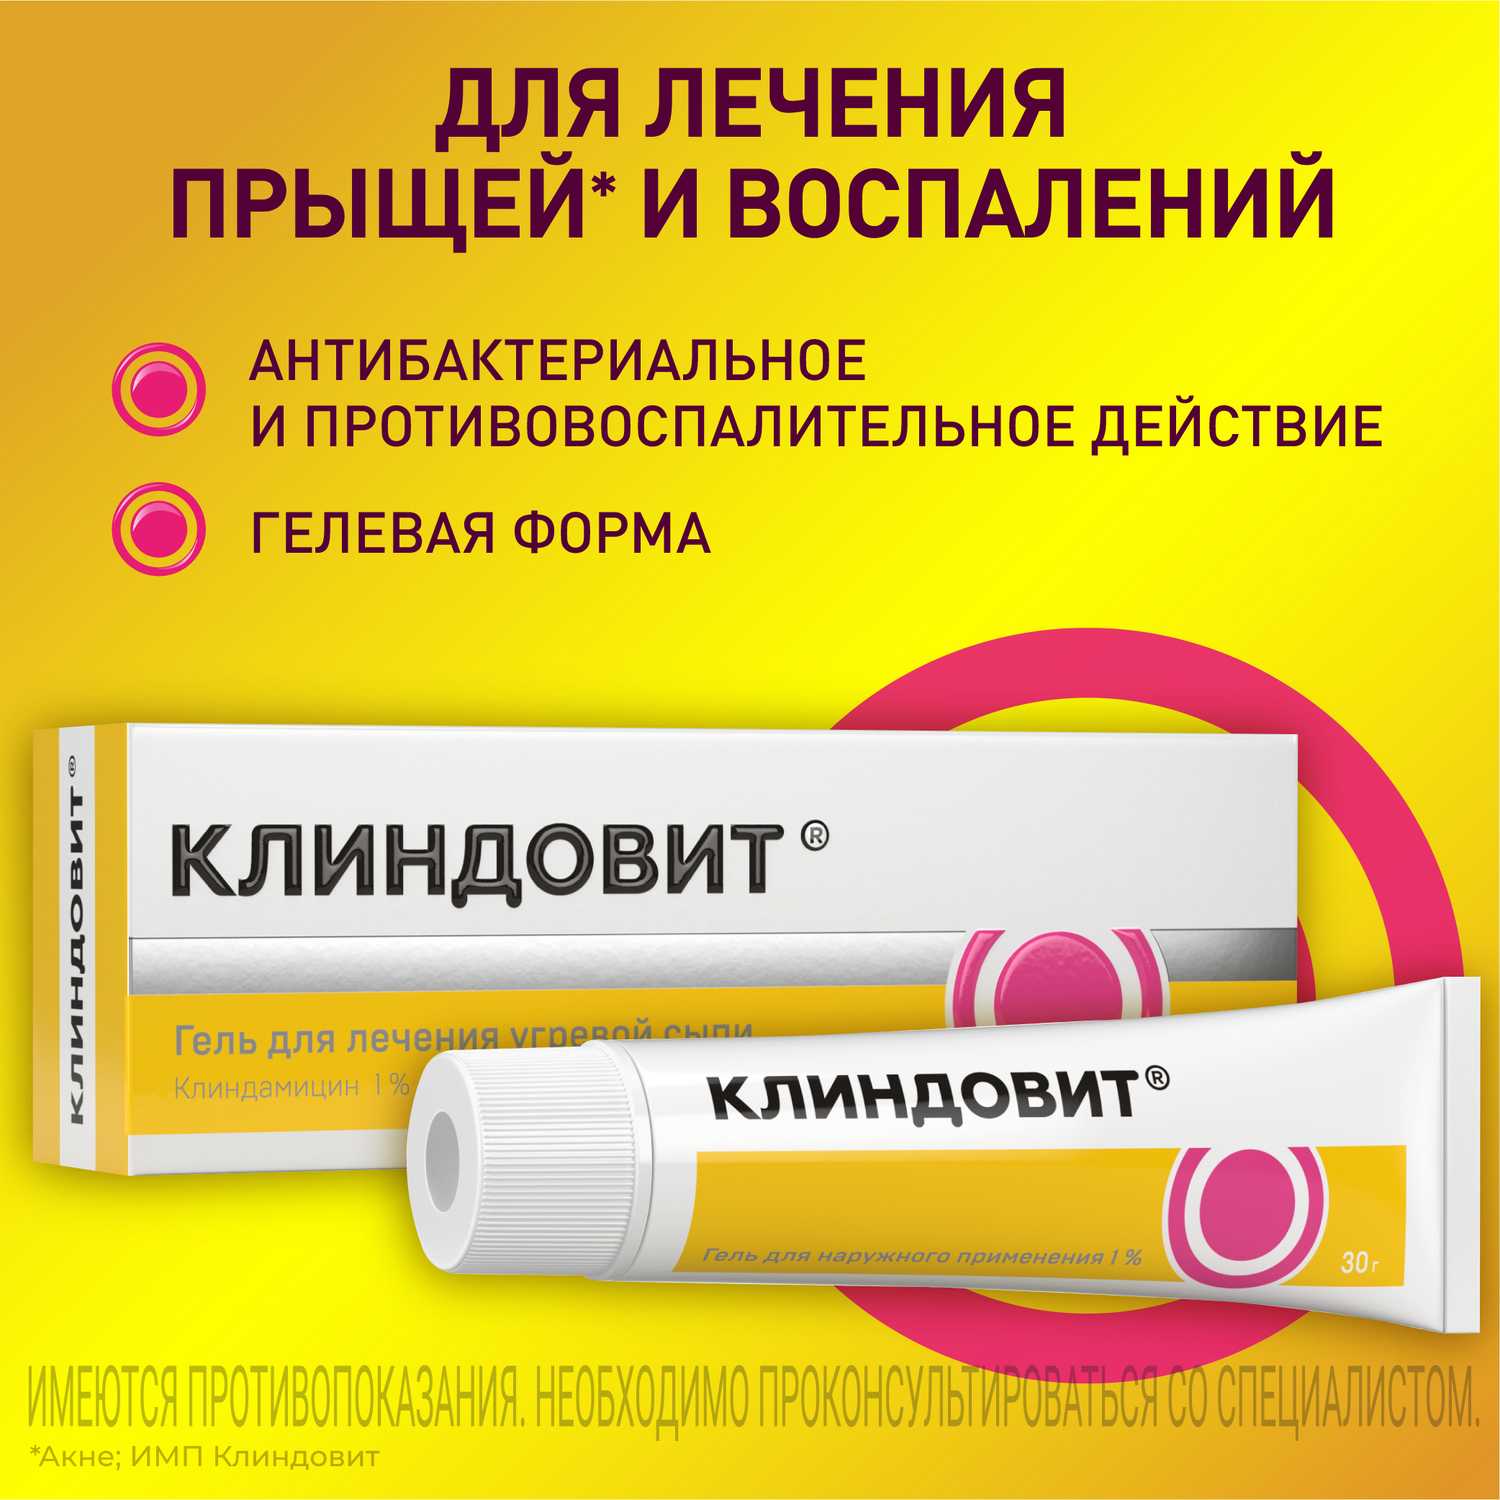 Купить Клиндовит® гель от прыщей на лице, 30 г (клиндамицин) по выгодной  цене в ближайшей аптеке в городе Пермь. Цена, инструкция на лекарство,  препарат